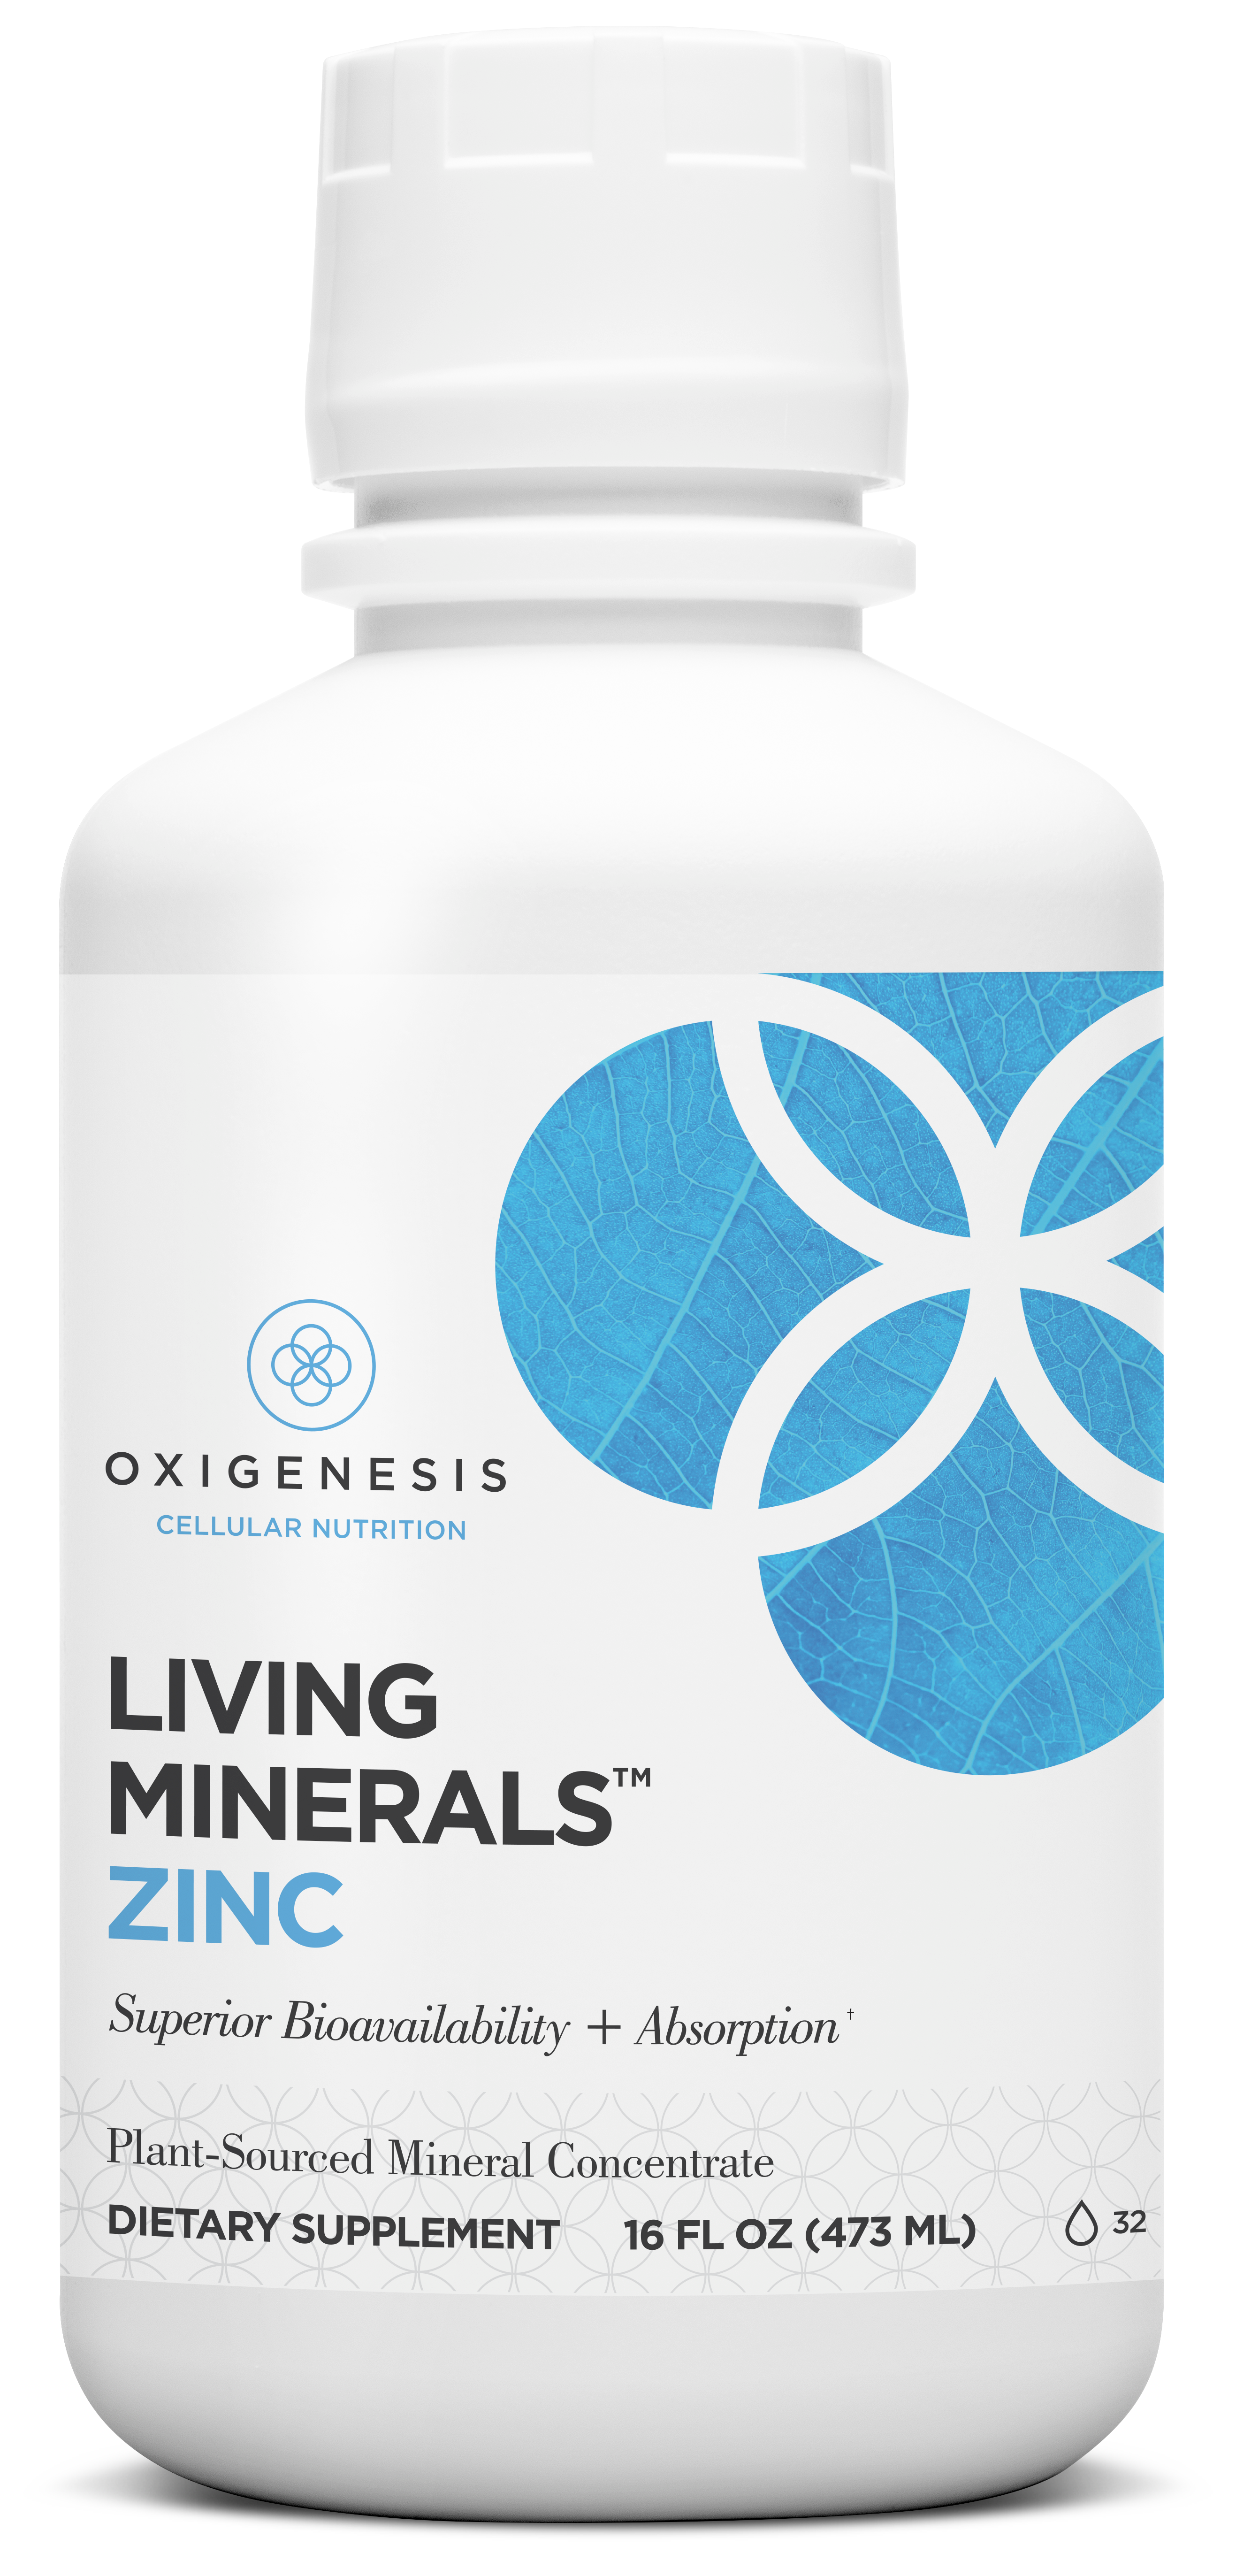 Living Minerals™ ZINC